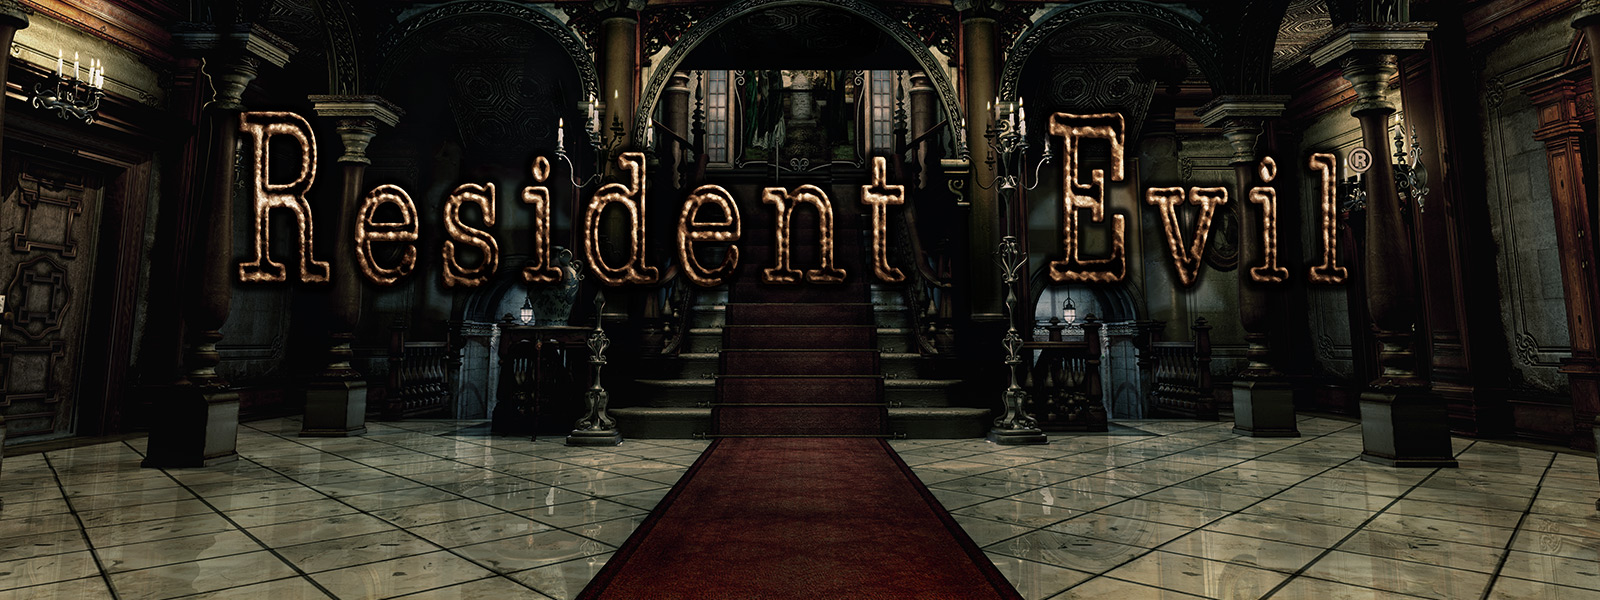 Resident Evil, вид величественного входа в здание с аркой со ступеньками, покрытыми красным ковром